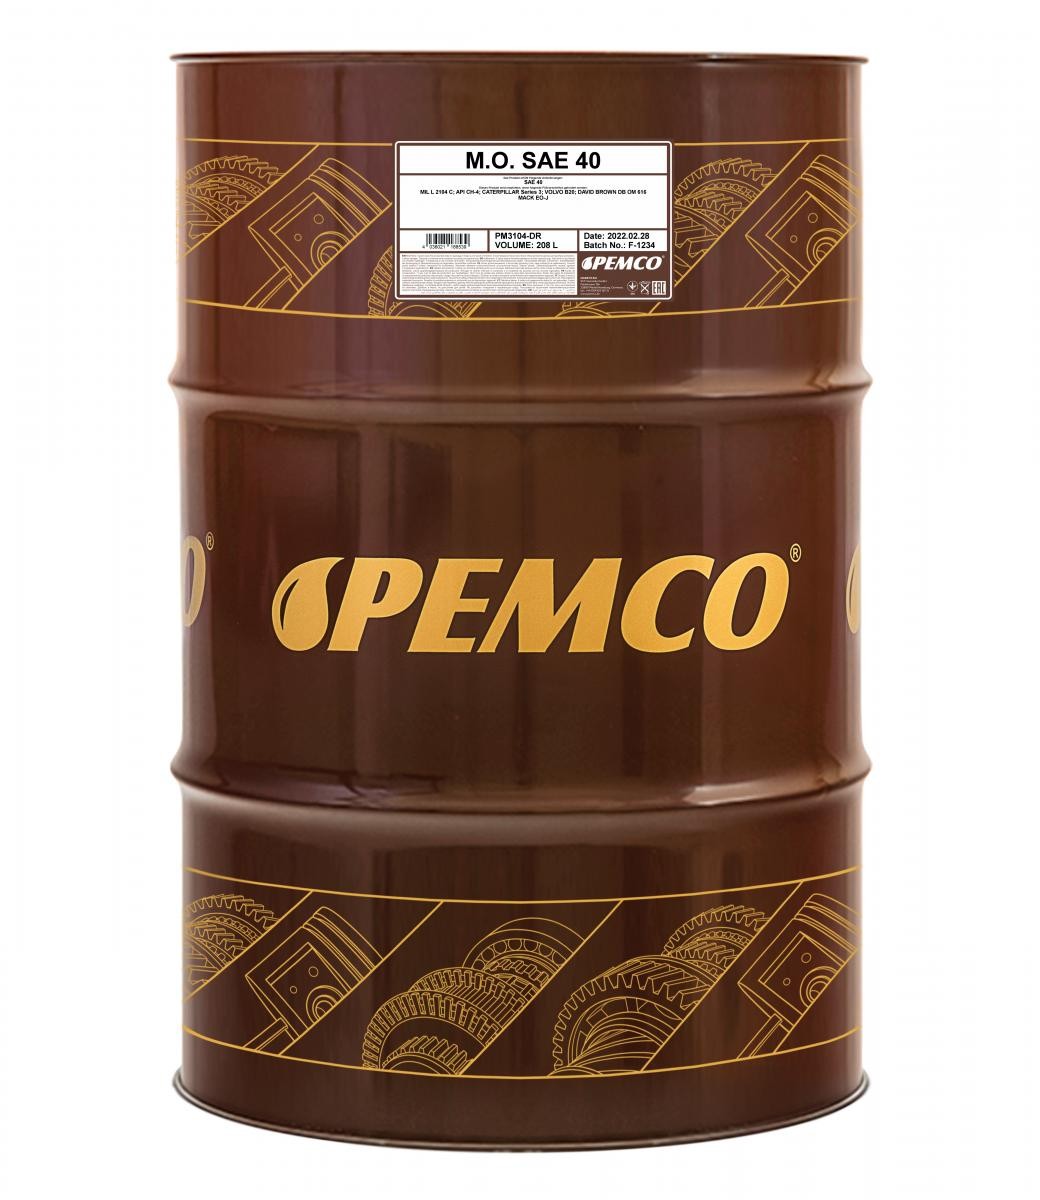 Automobile oil SAE 40 longlife petrol - PM3104-DR PEMCO M.O. SAE 40